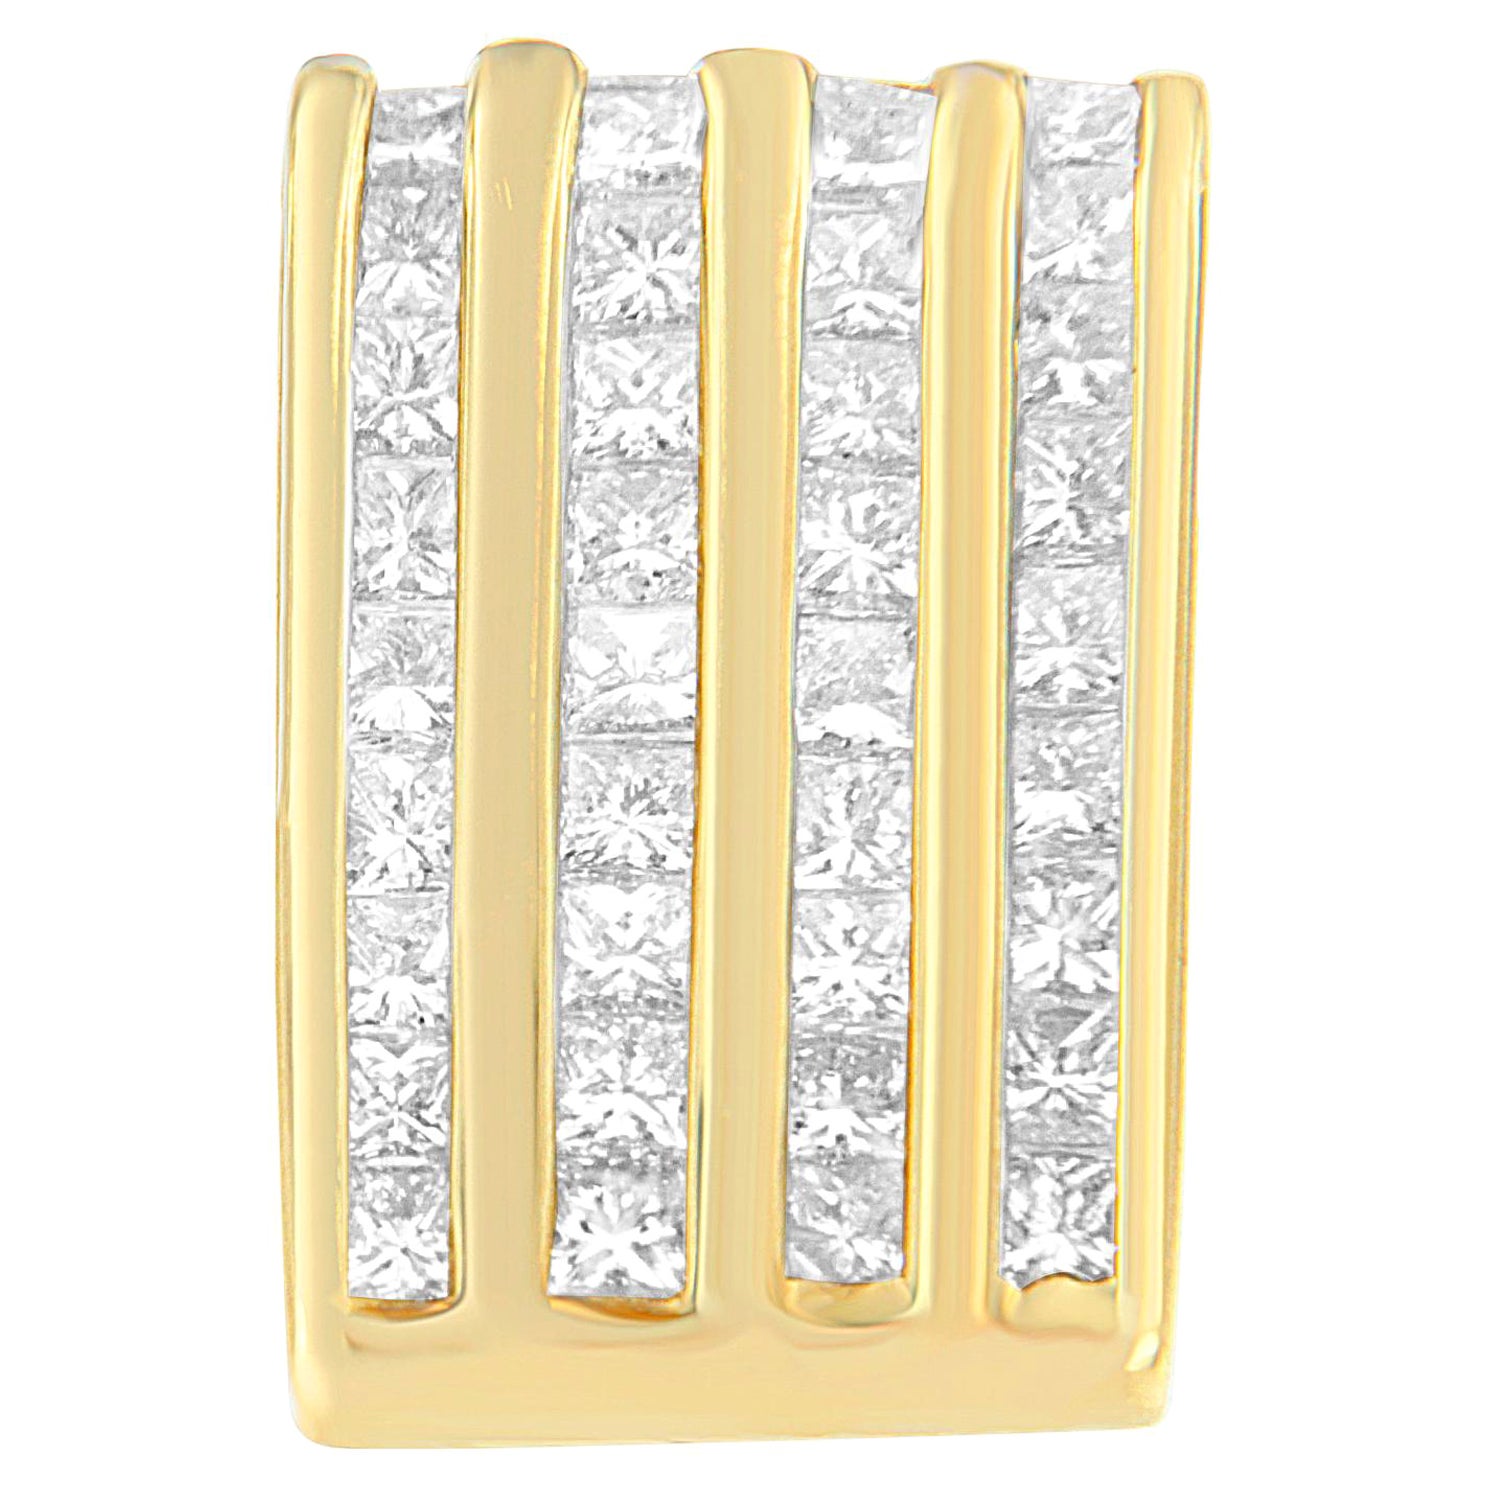 14K Yellow Gold 2 1/3 Carat Princess Cut Diamond Block Pendant Necklace